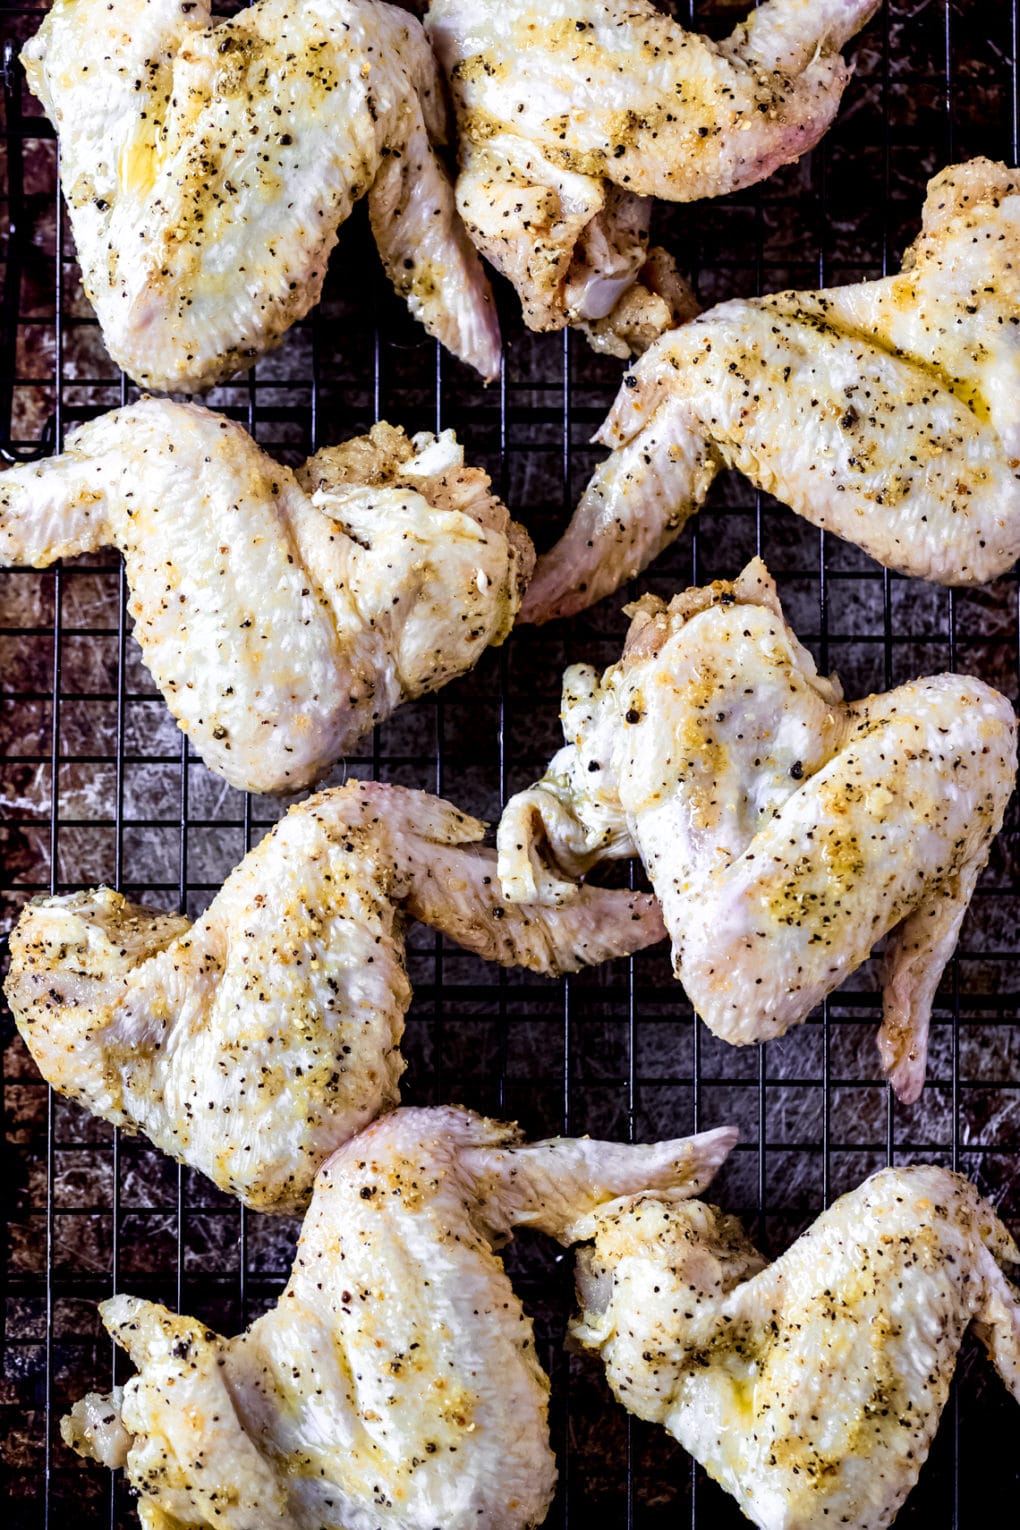 raw lemon pepper chicken wings on a baking sheet